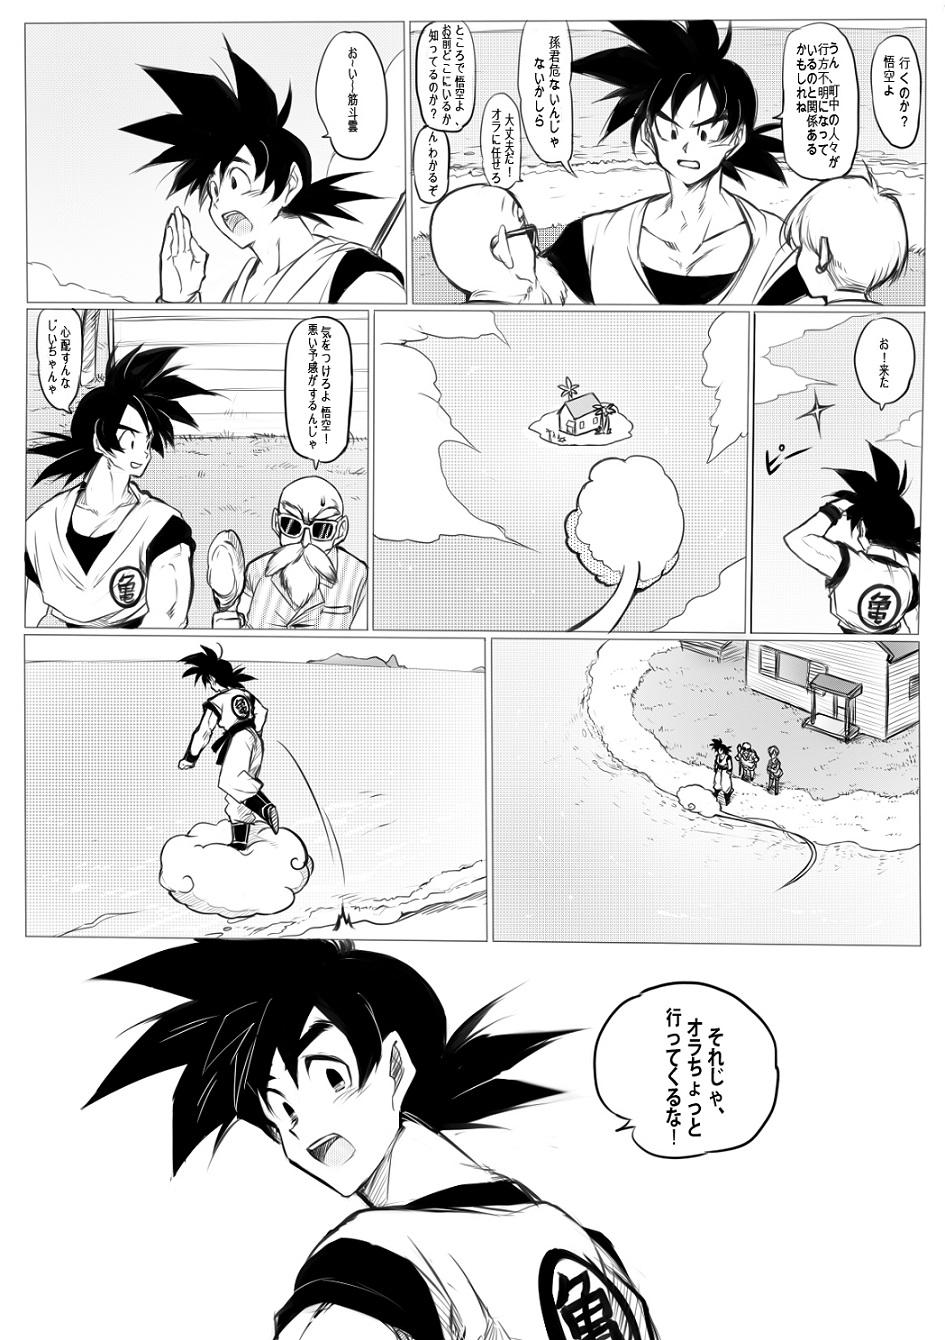 Rough Porn 接触 - Dragon ball z Imvu - Page 2